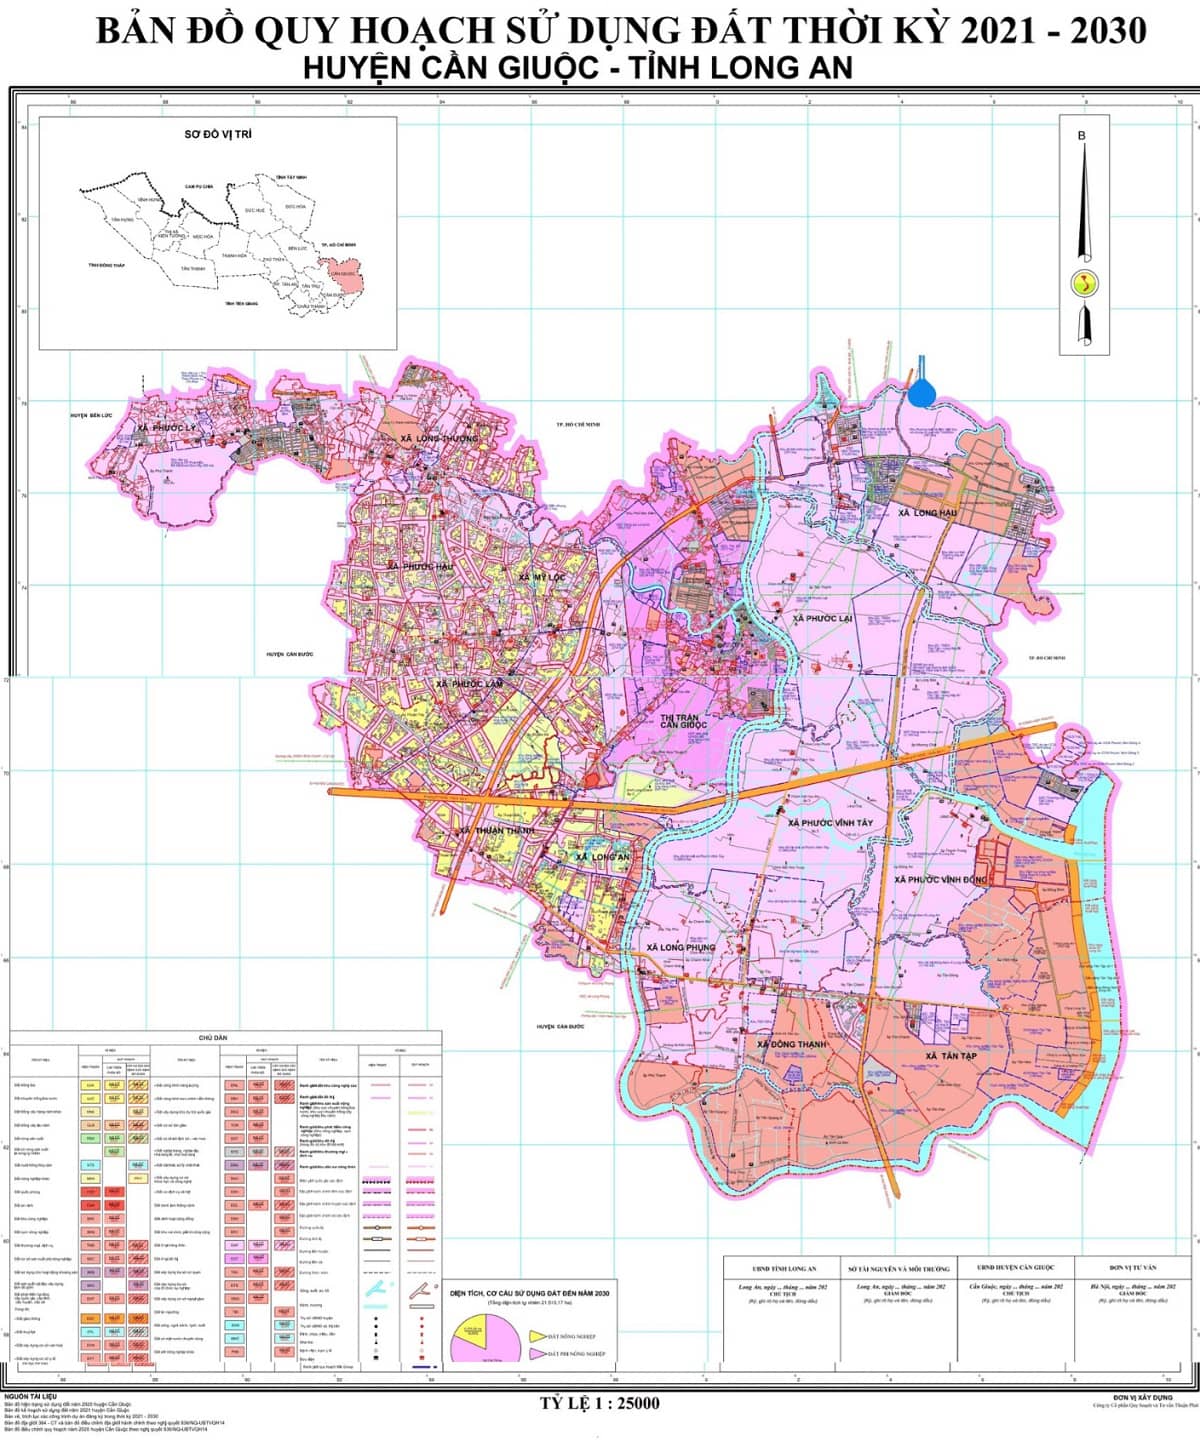 Bản đồ quy hoạch huyện Cần Giuộc